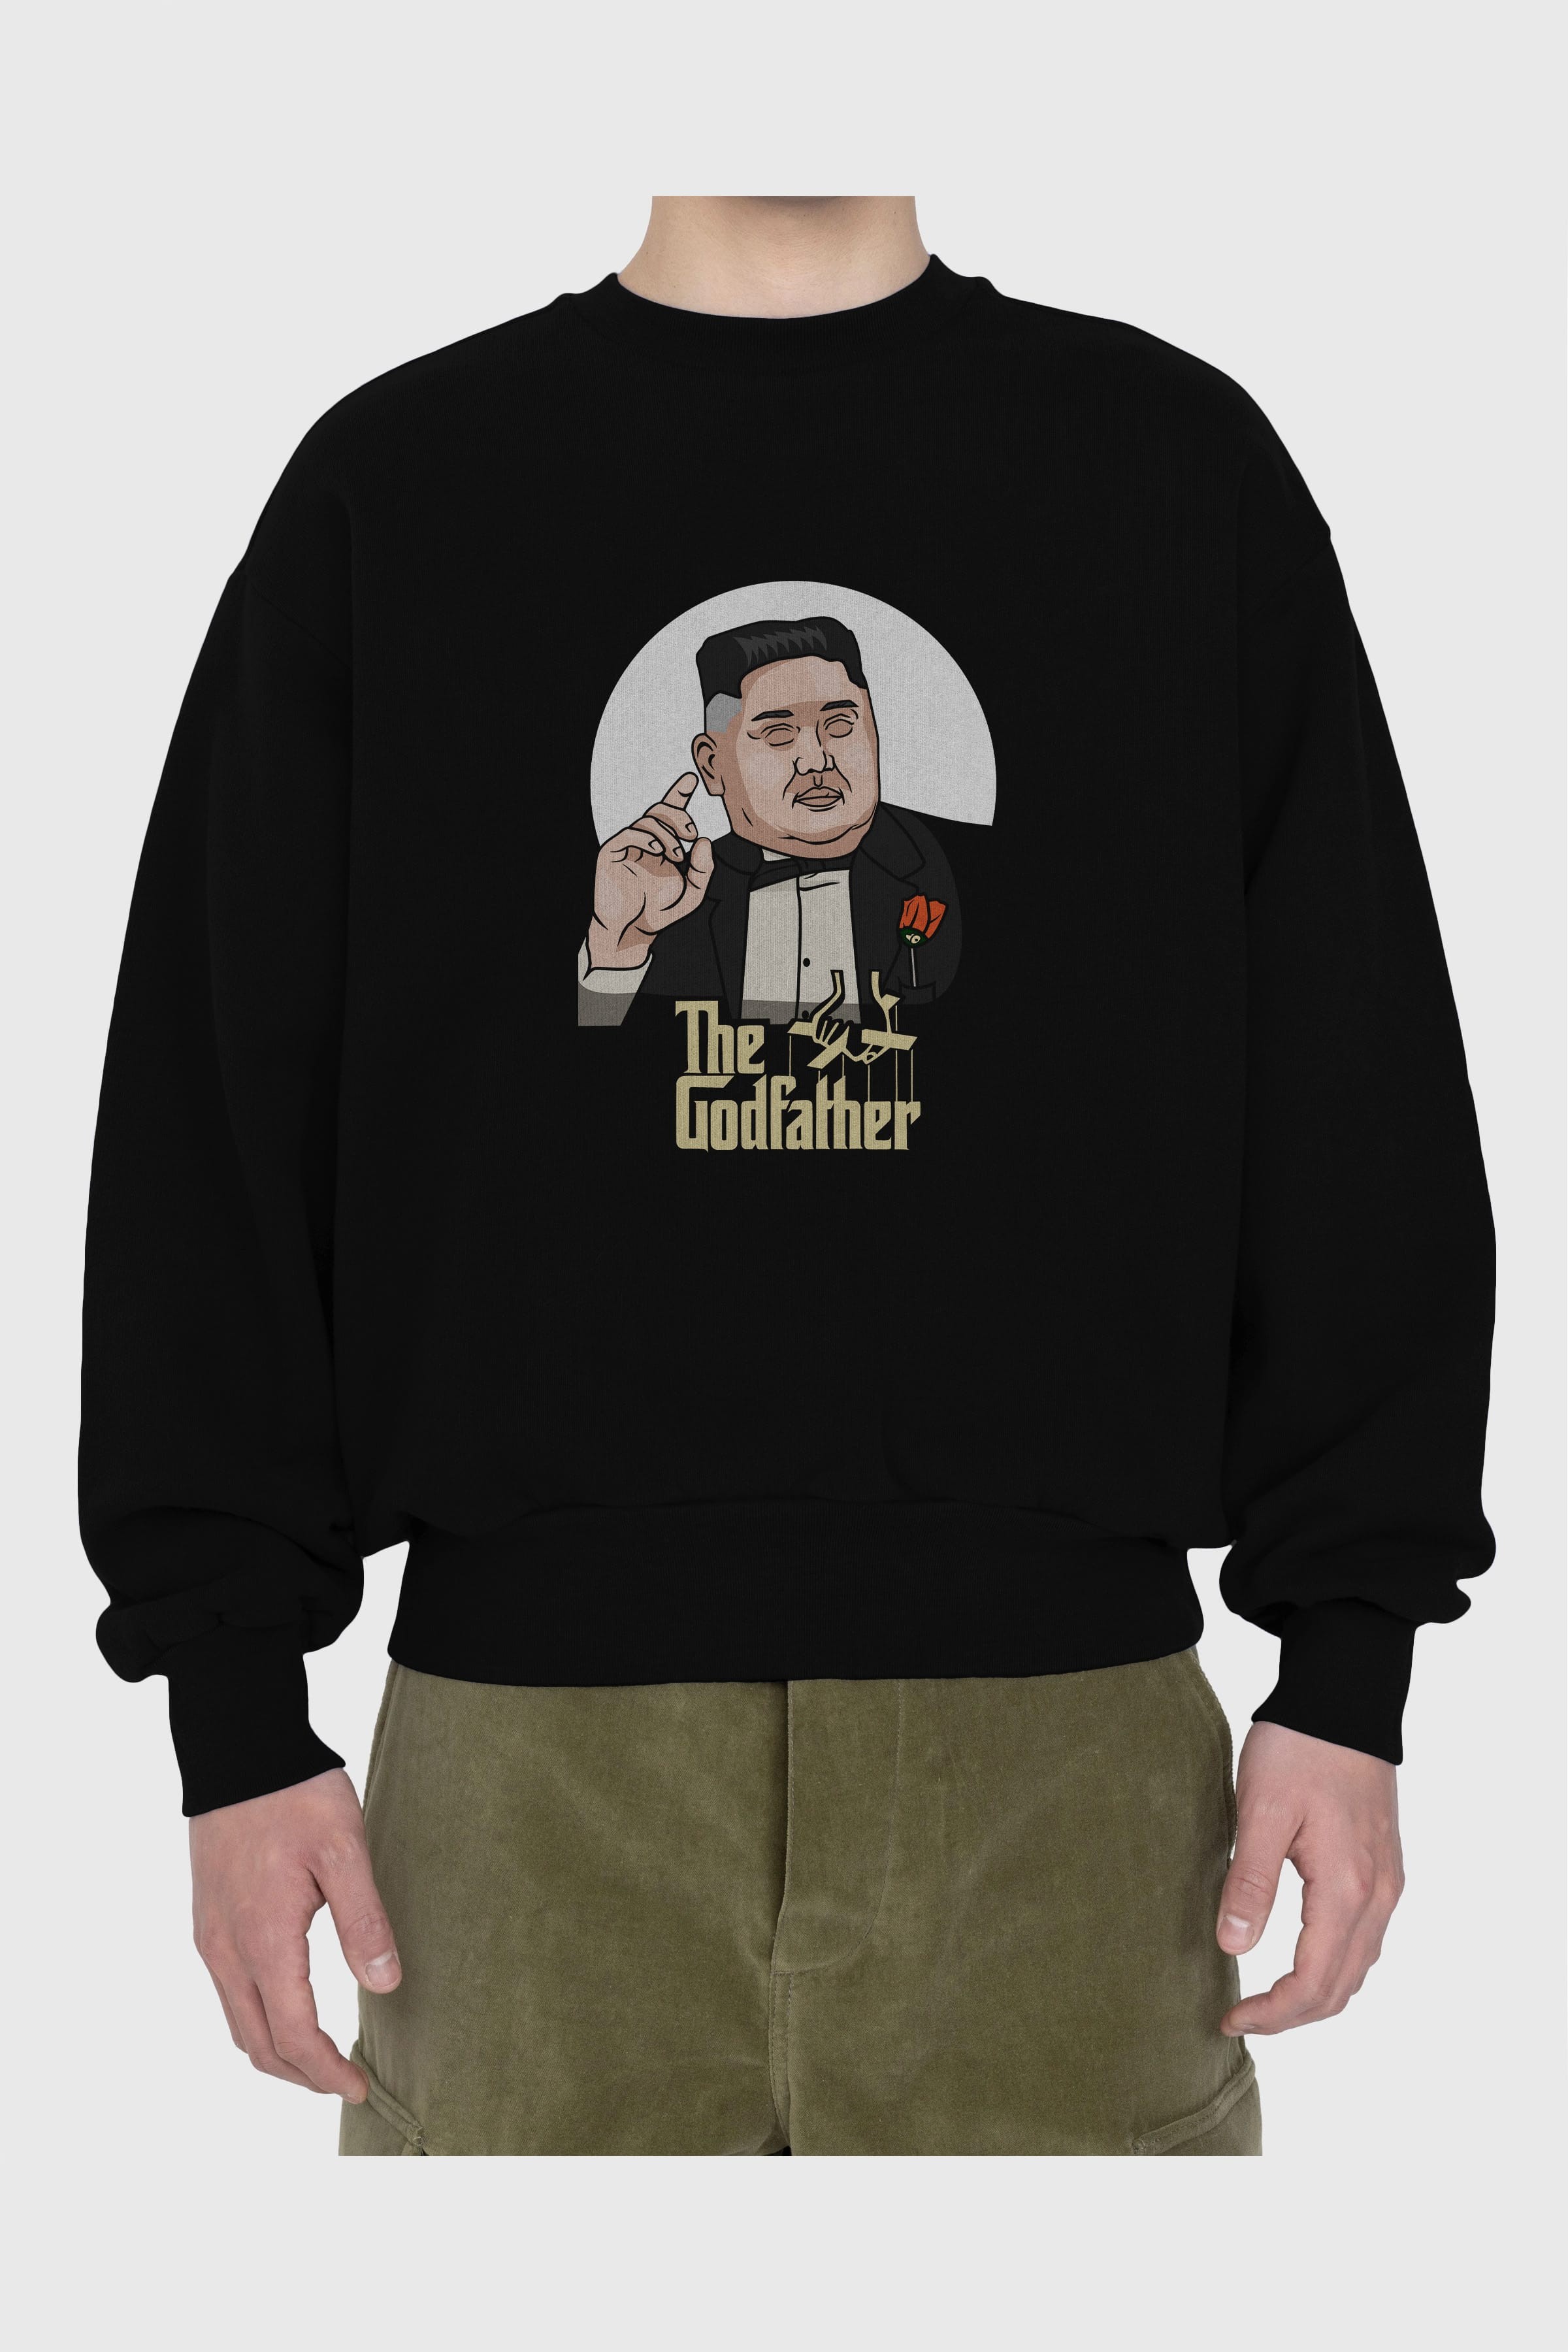 Godfather Jong Un Ön Baskılı Oversize Sweatshirt Erkek Kadın Unisex